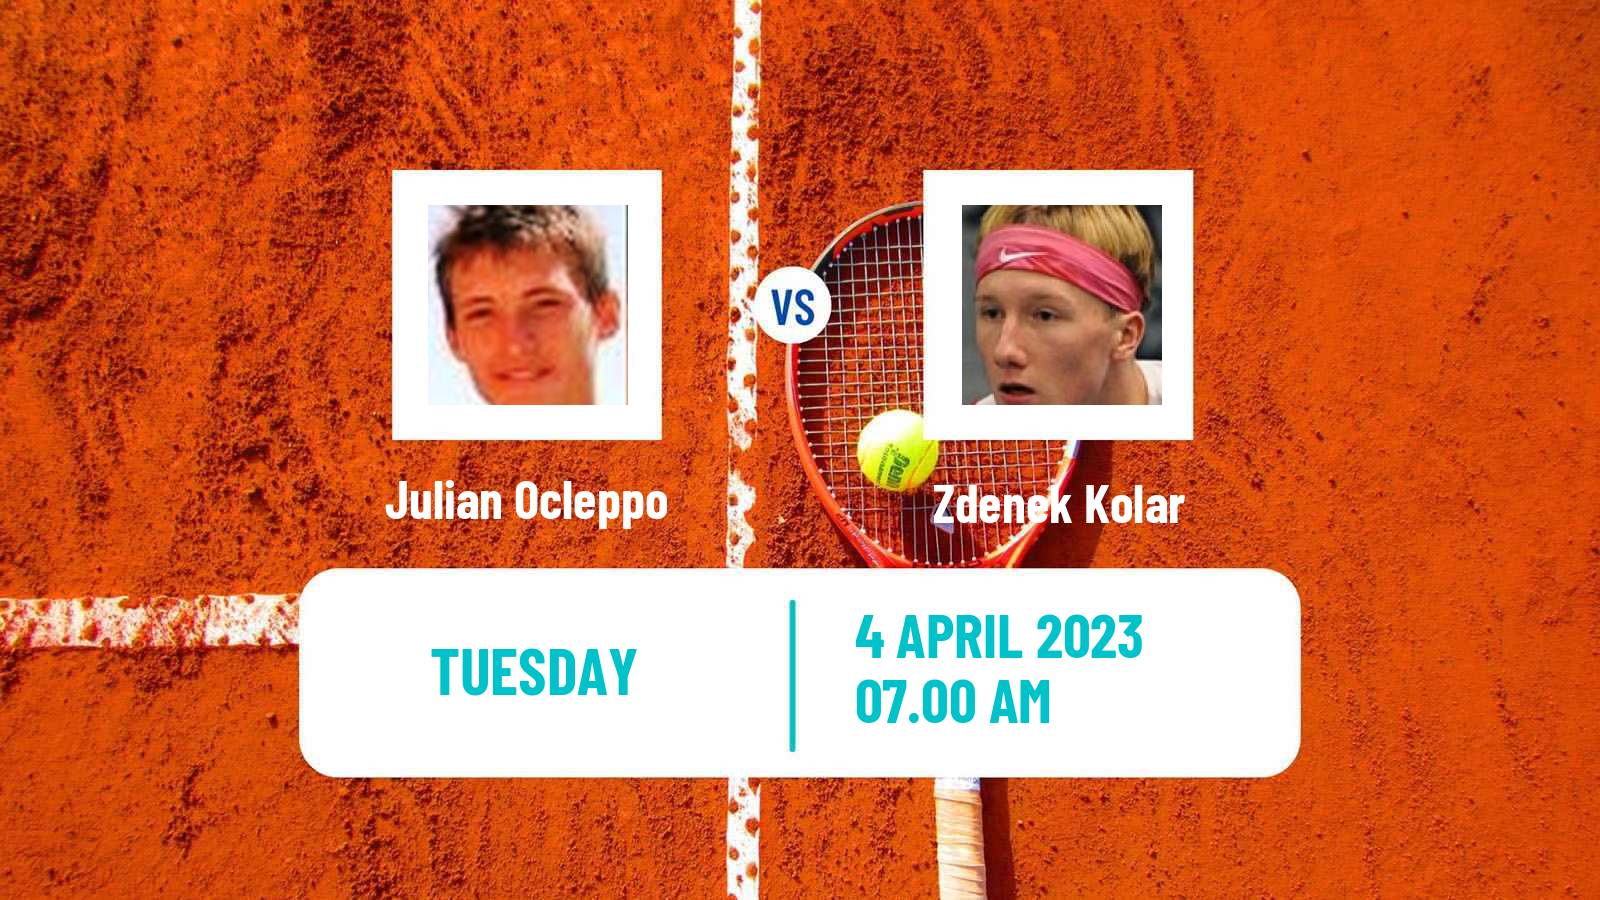 Tennis ATP Challenger Julian Ocleppo - Zdenek Kolar